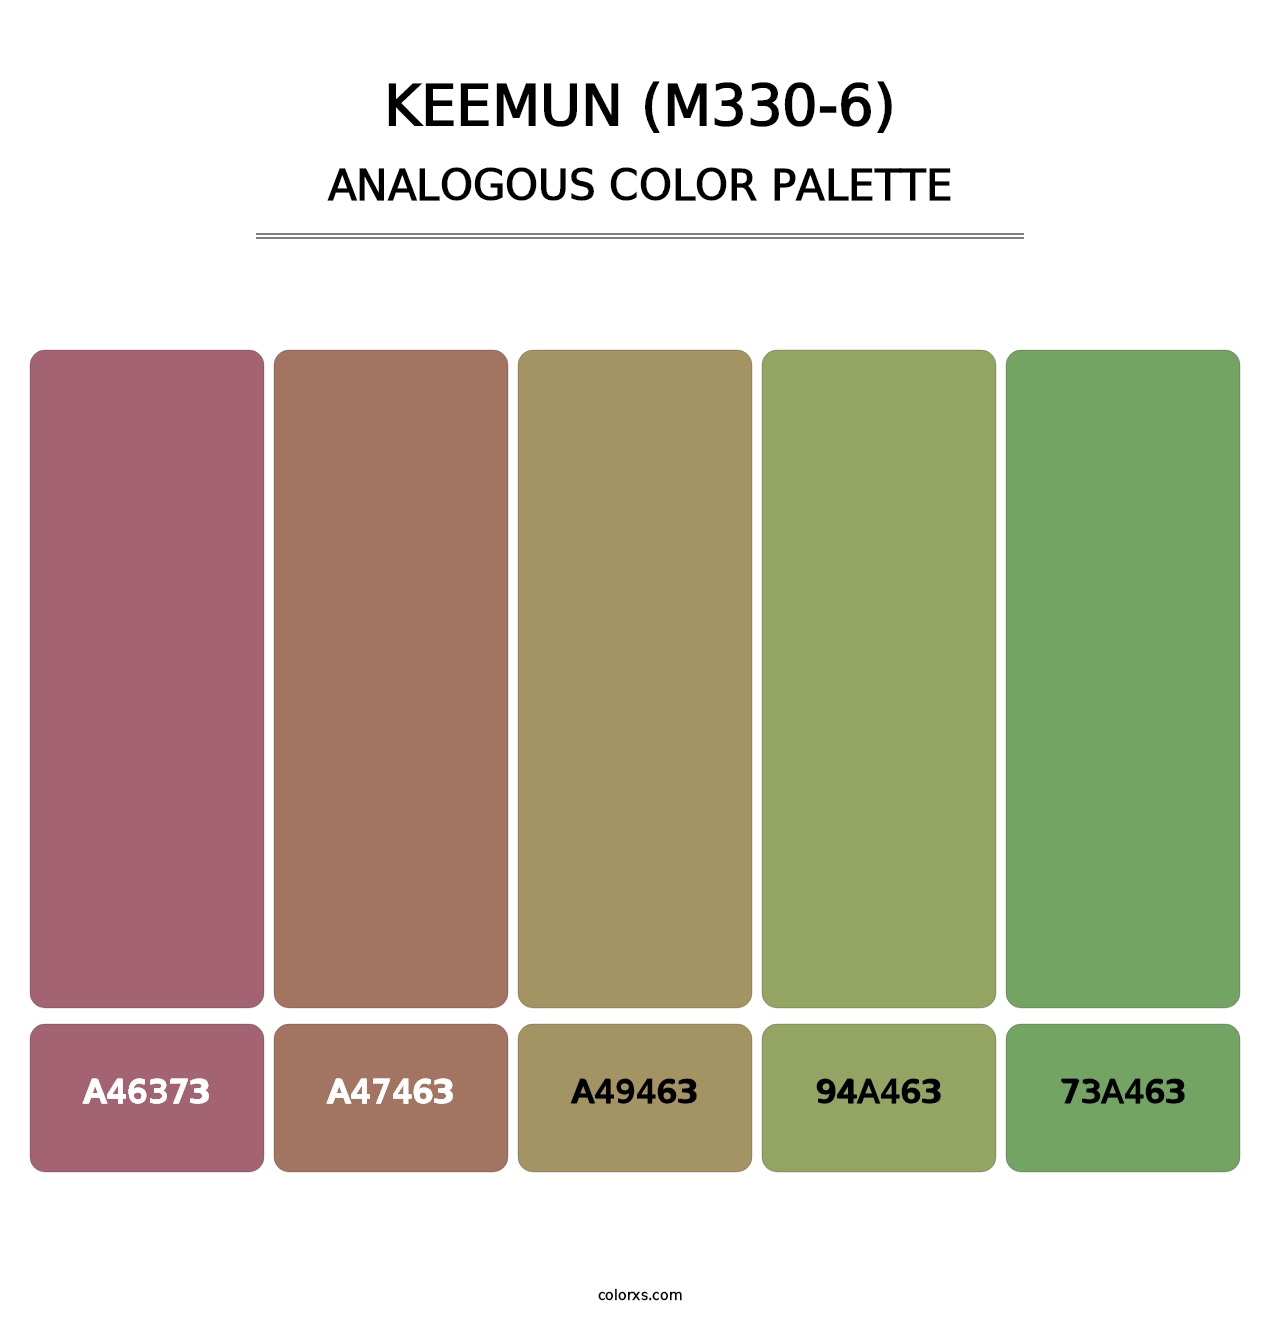 Keemun (M330-6) - Analogous Color Palette